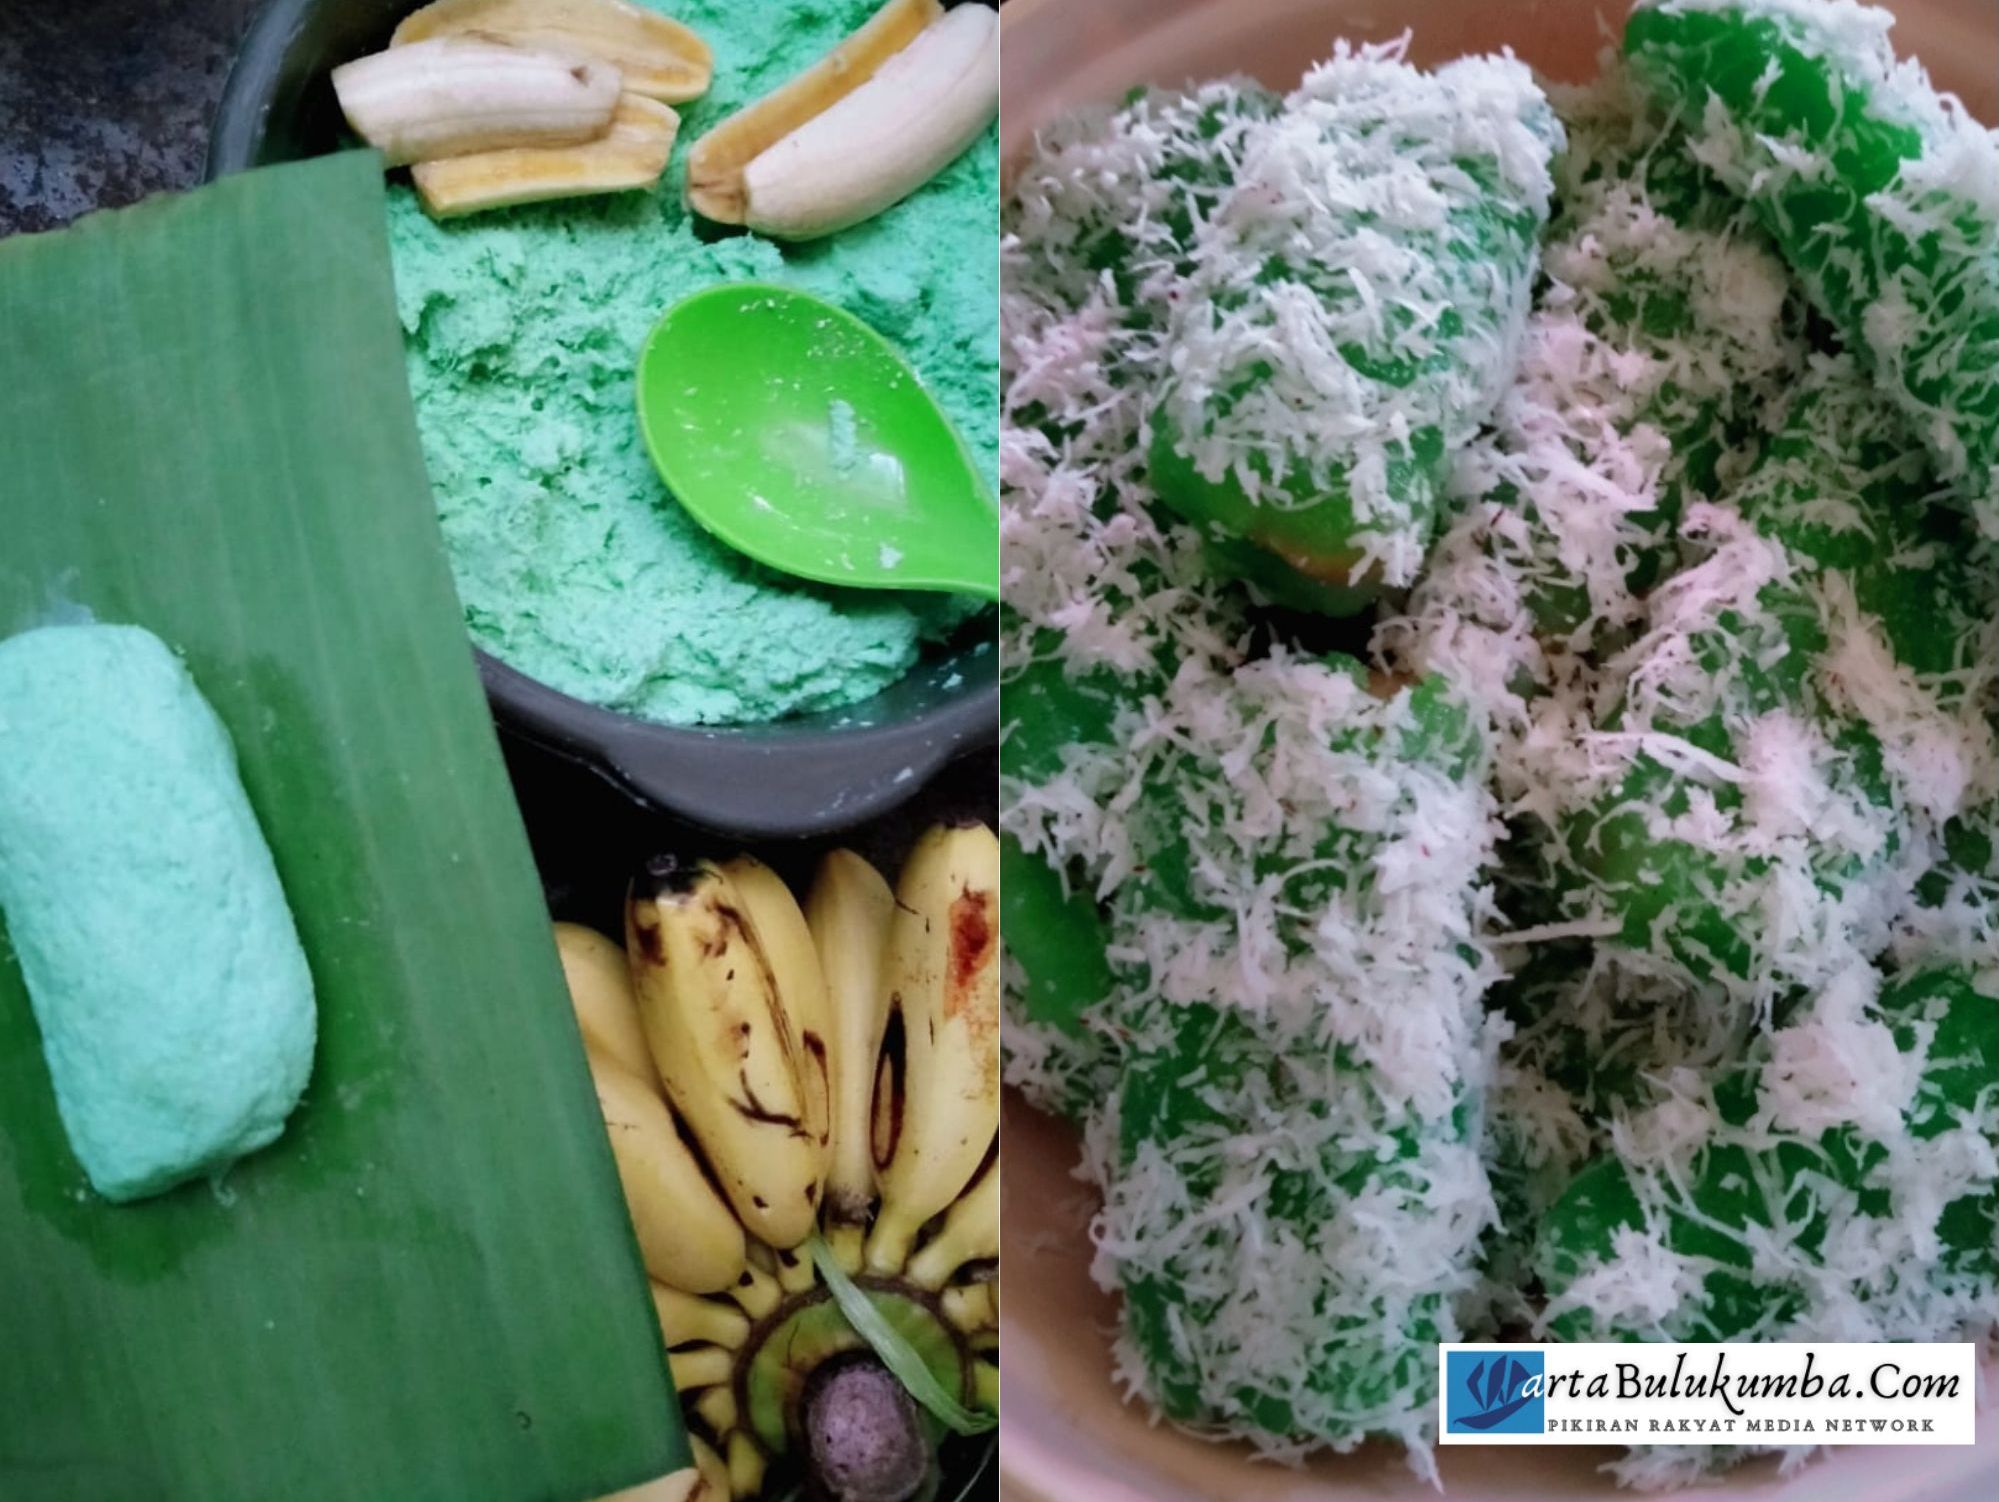 Kue kalimbu khas Bugis Makassar yang mudah ditemukan di Desa Salassae, Kecamatan Bulukumpa, Kabupaten Bulukumba, Sulsel.